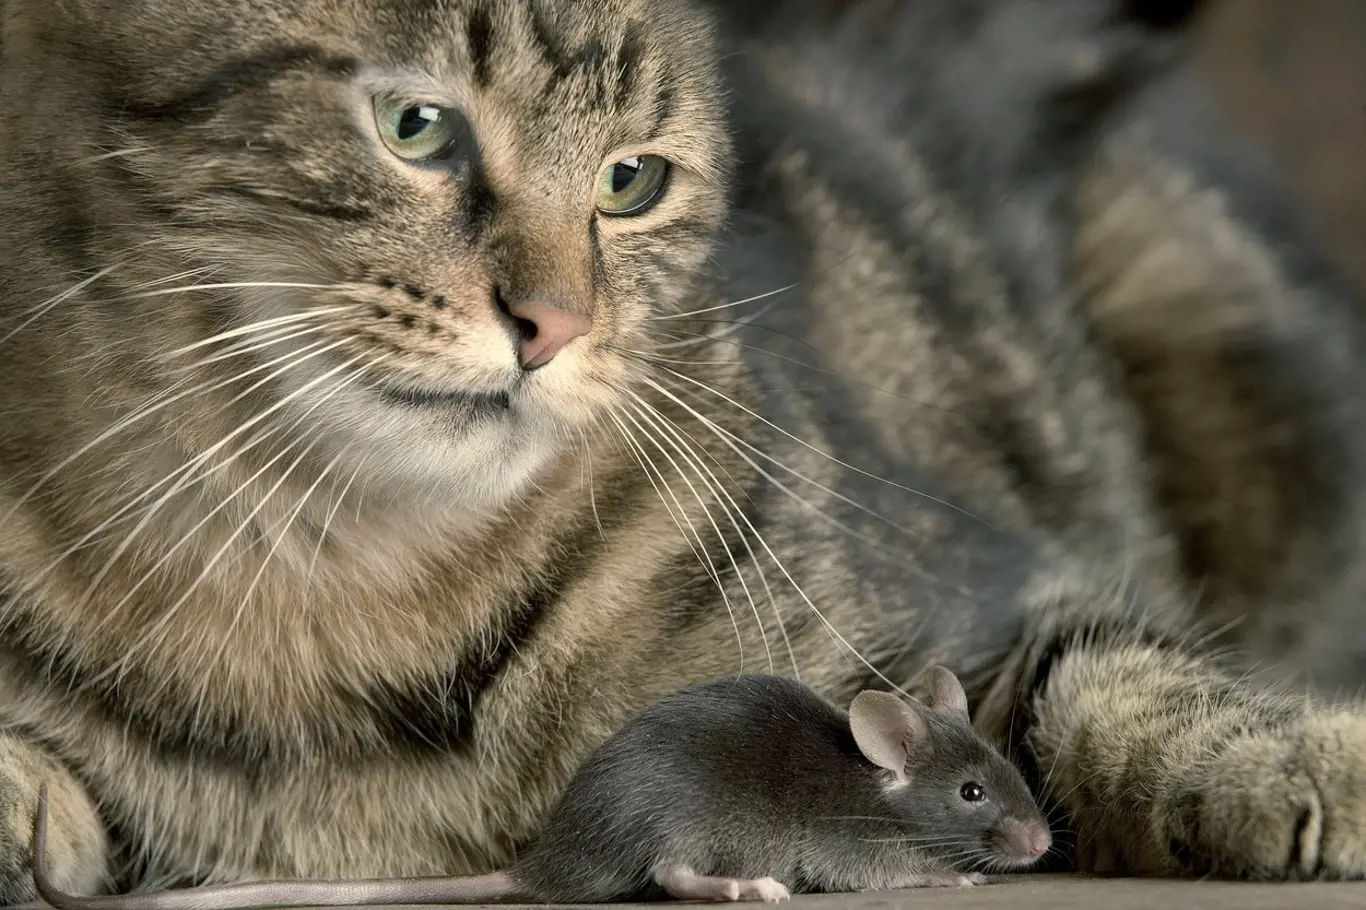 Kočky nebo psi dokážou v případě boje proti myším velmi dobře posloužit.